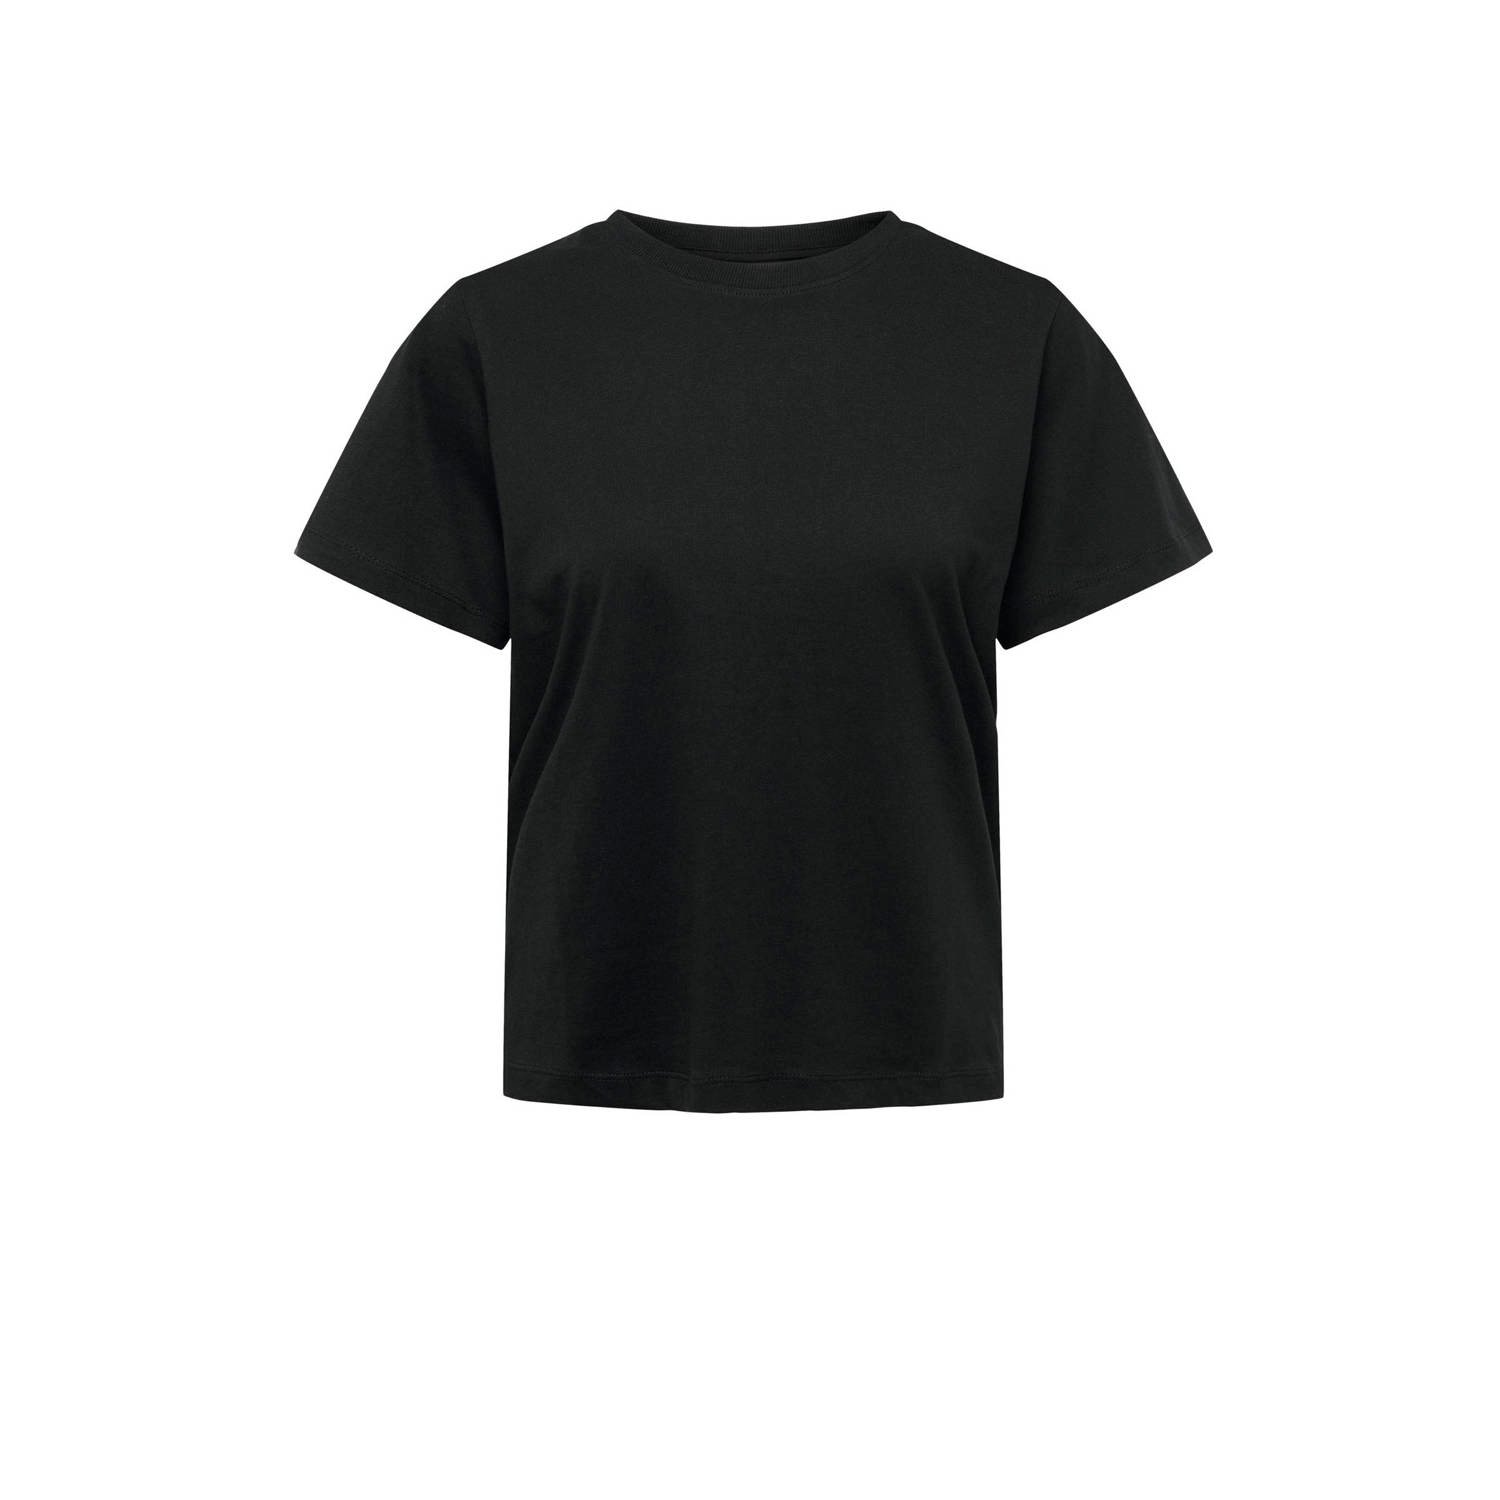 JDY PISA geweven T-shirt zwart